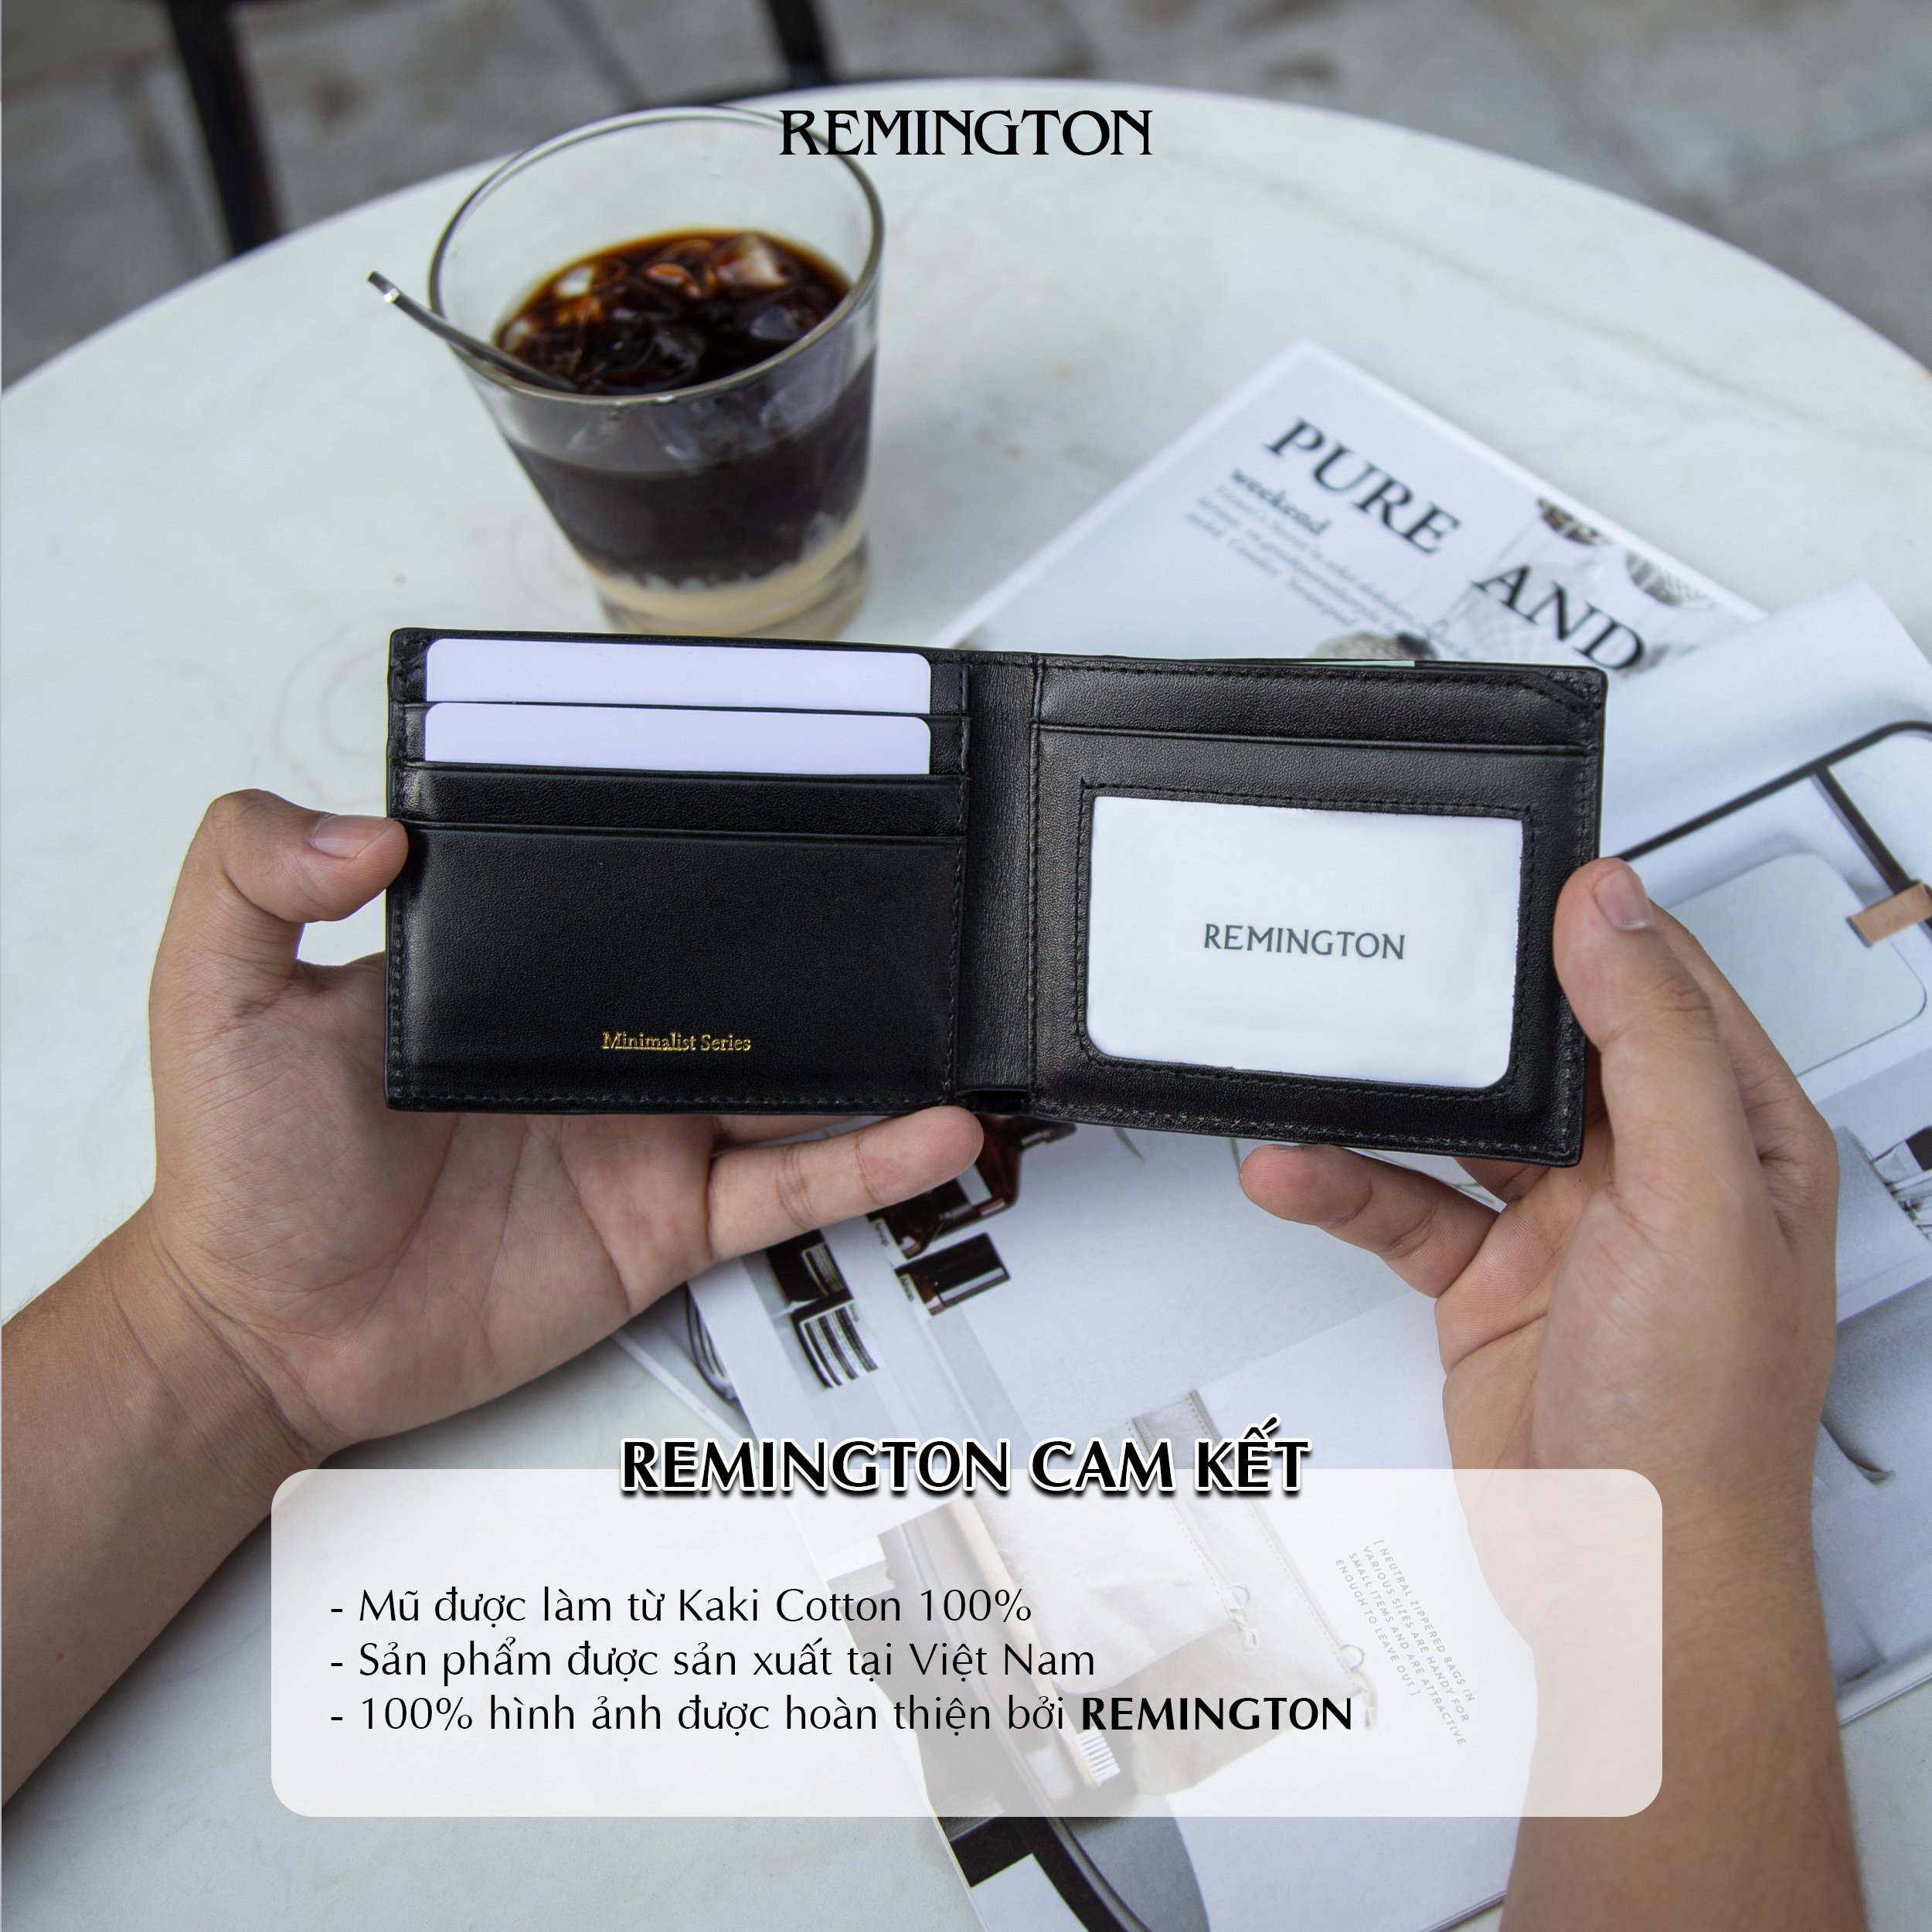 ví mini nam nhỏ gọn cầm tay Remington - Avalan Wallet tặng kèm hộp, thiệp và túi giấy để làm quà tặng cho người yêu hoặc bố